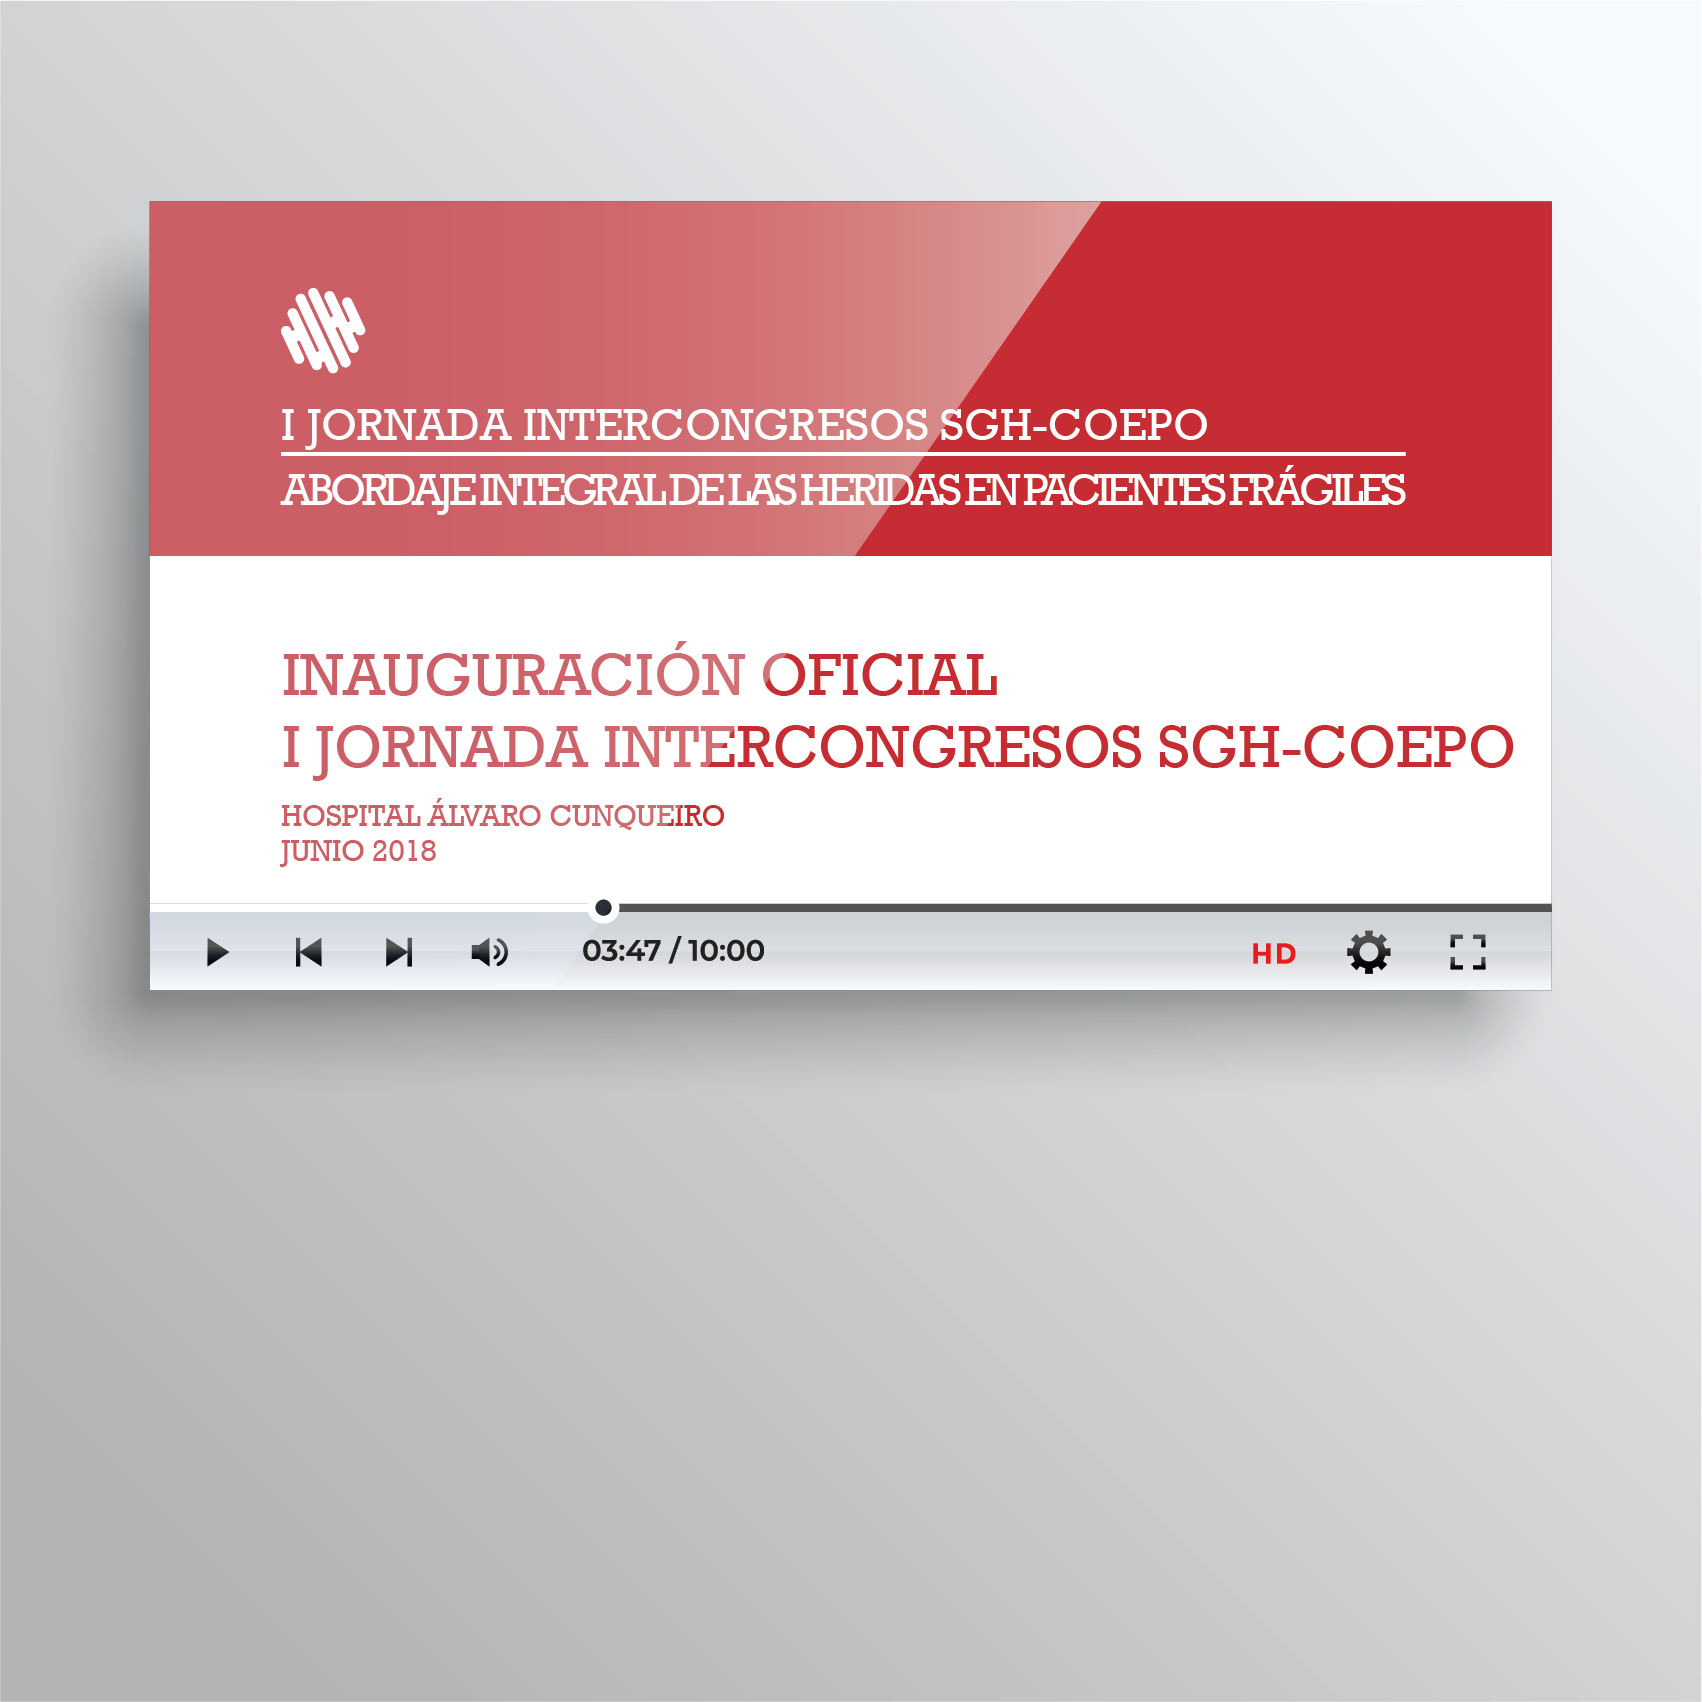 Inauguración Oficial I Jornada Intercongresos SGH-COEPO